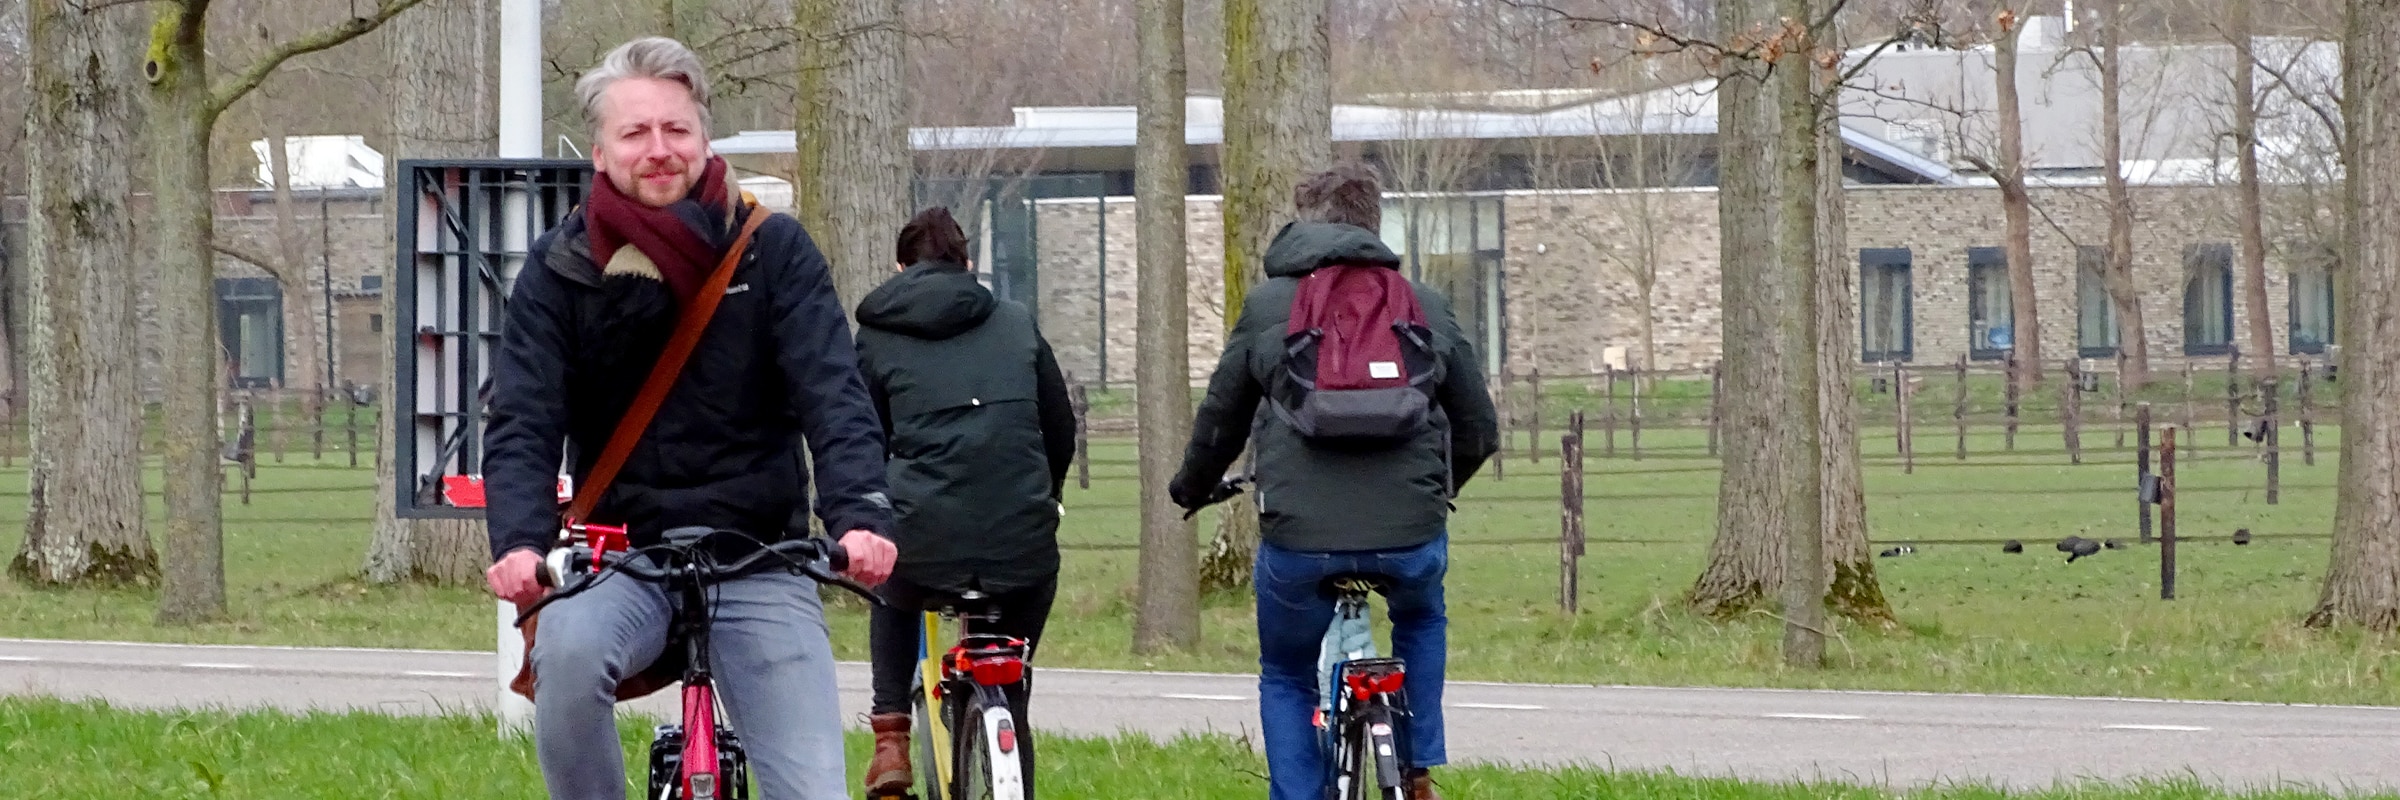 Op de elektrische fiets naar werk! Wil jij ook een elektrische fiets kopen? Maak nu een gratis proefrit bij fietsenwinkel EasyFiets in Leiden!